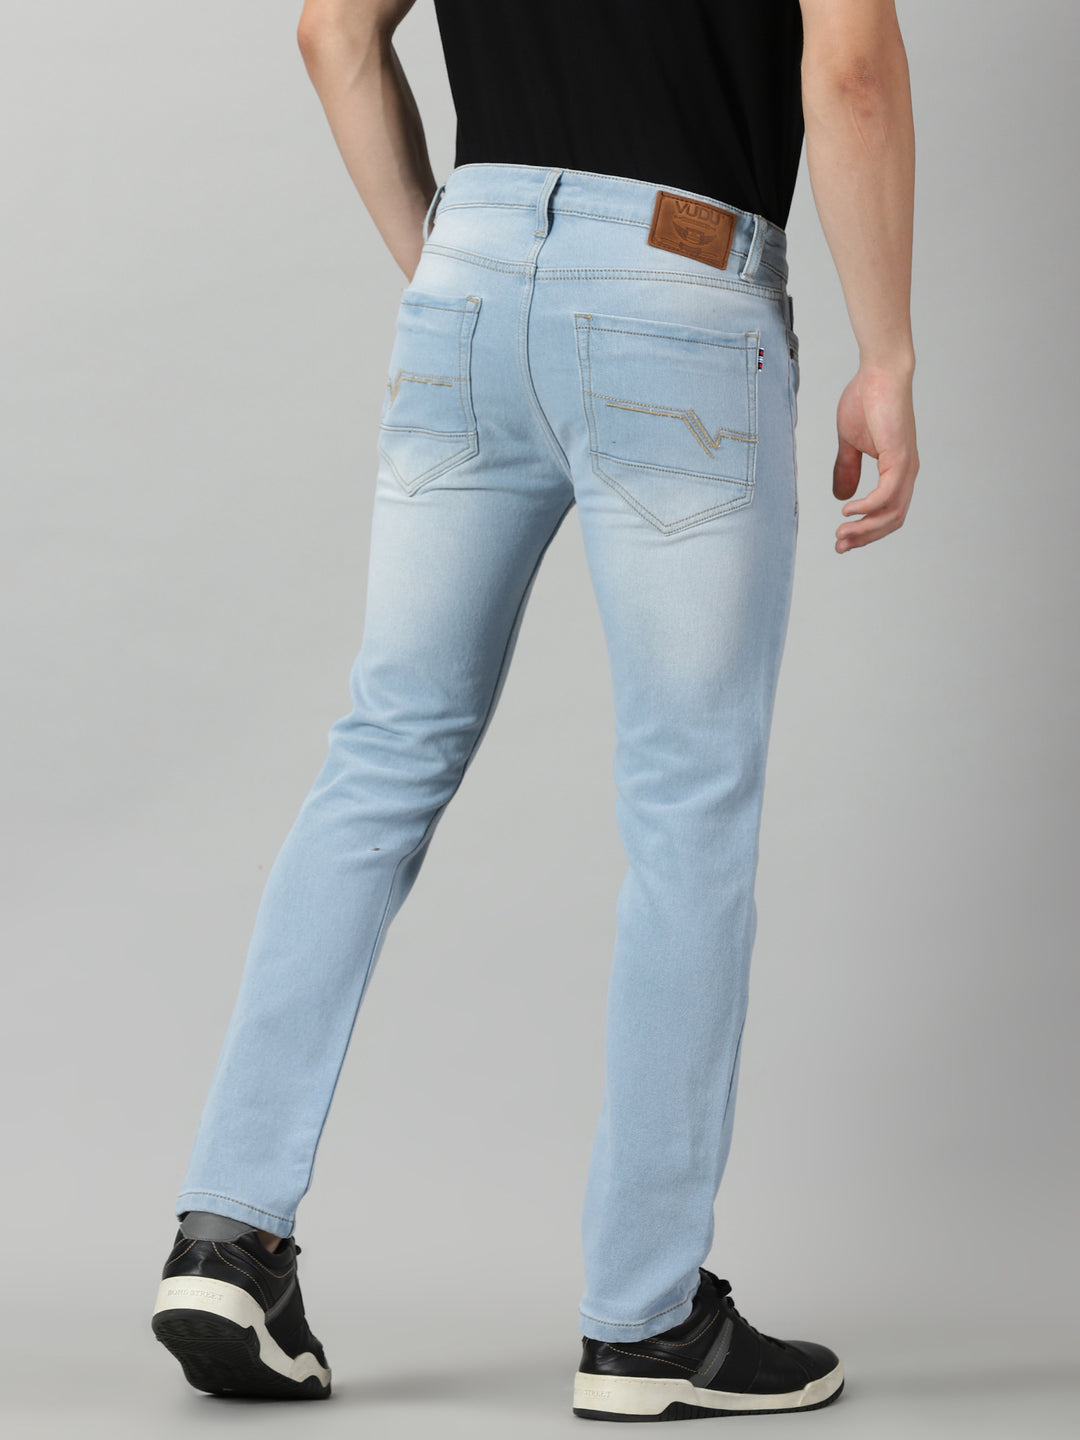 Pale Blue Jeans